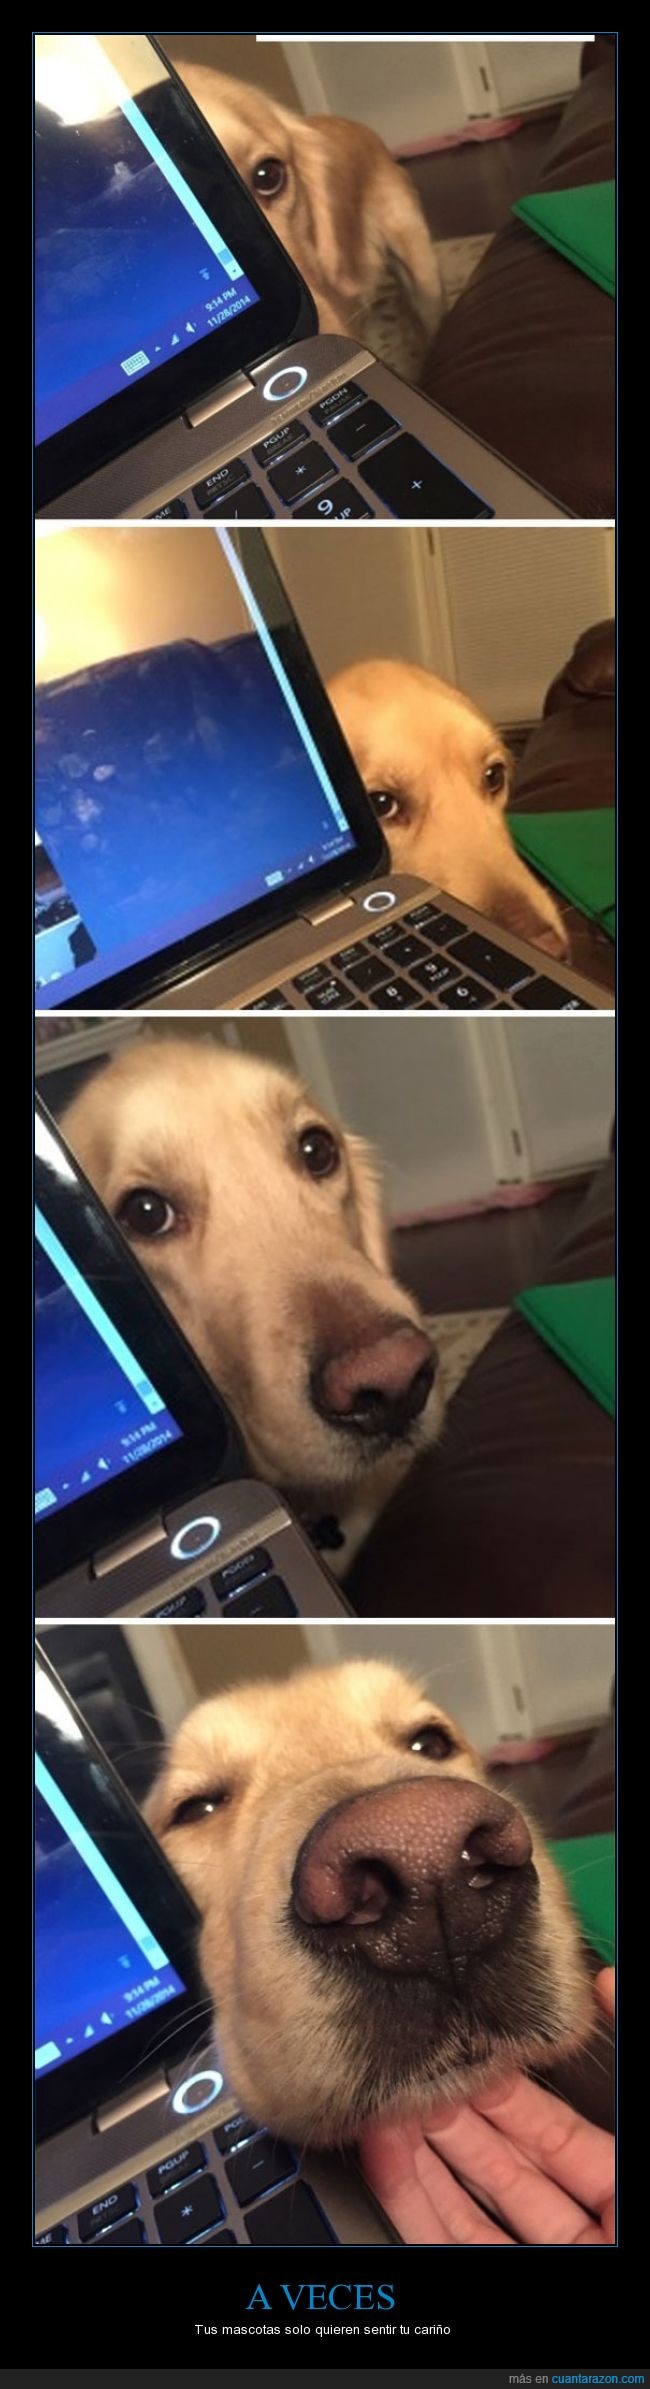 cariño,mascota,perrito,labrador,perro,tocar,ordenador,portatil